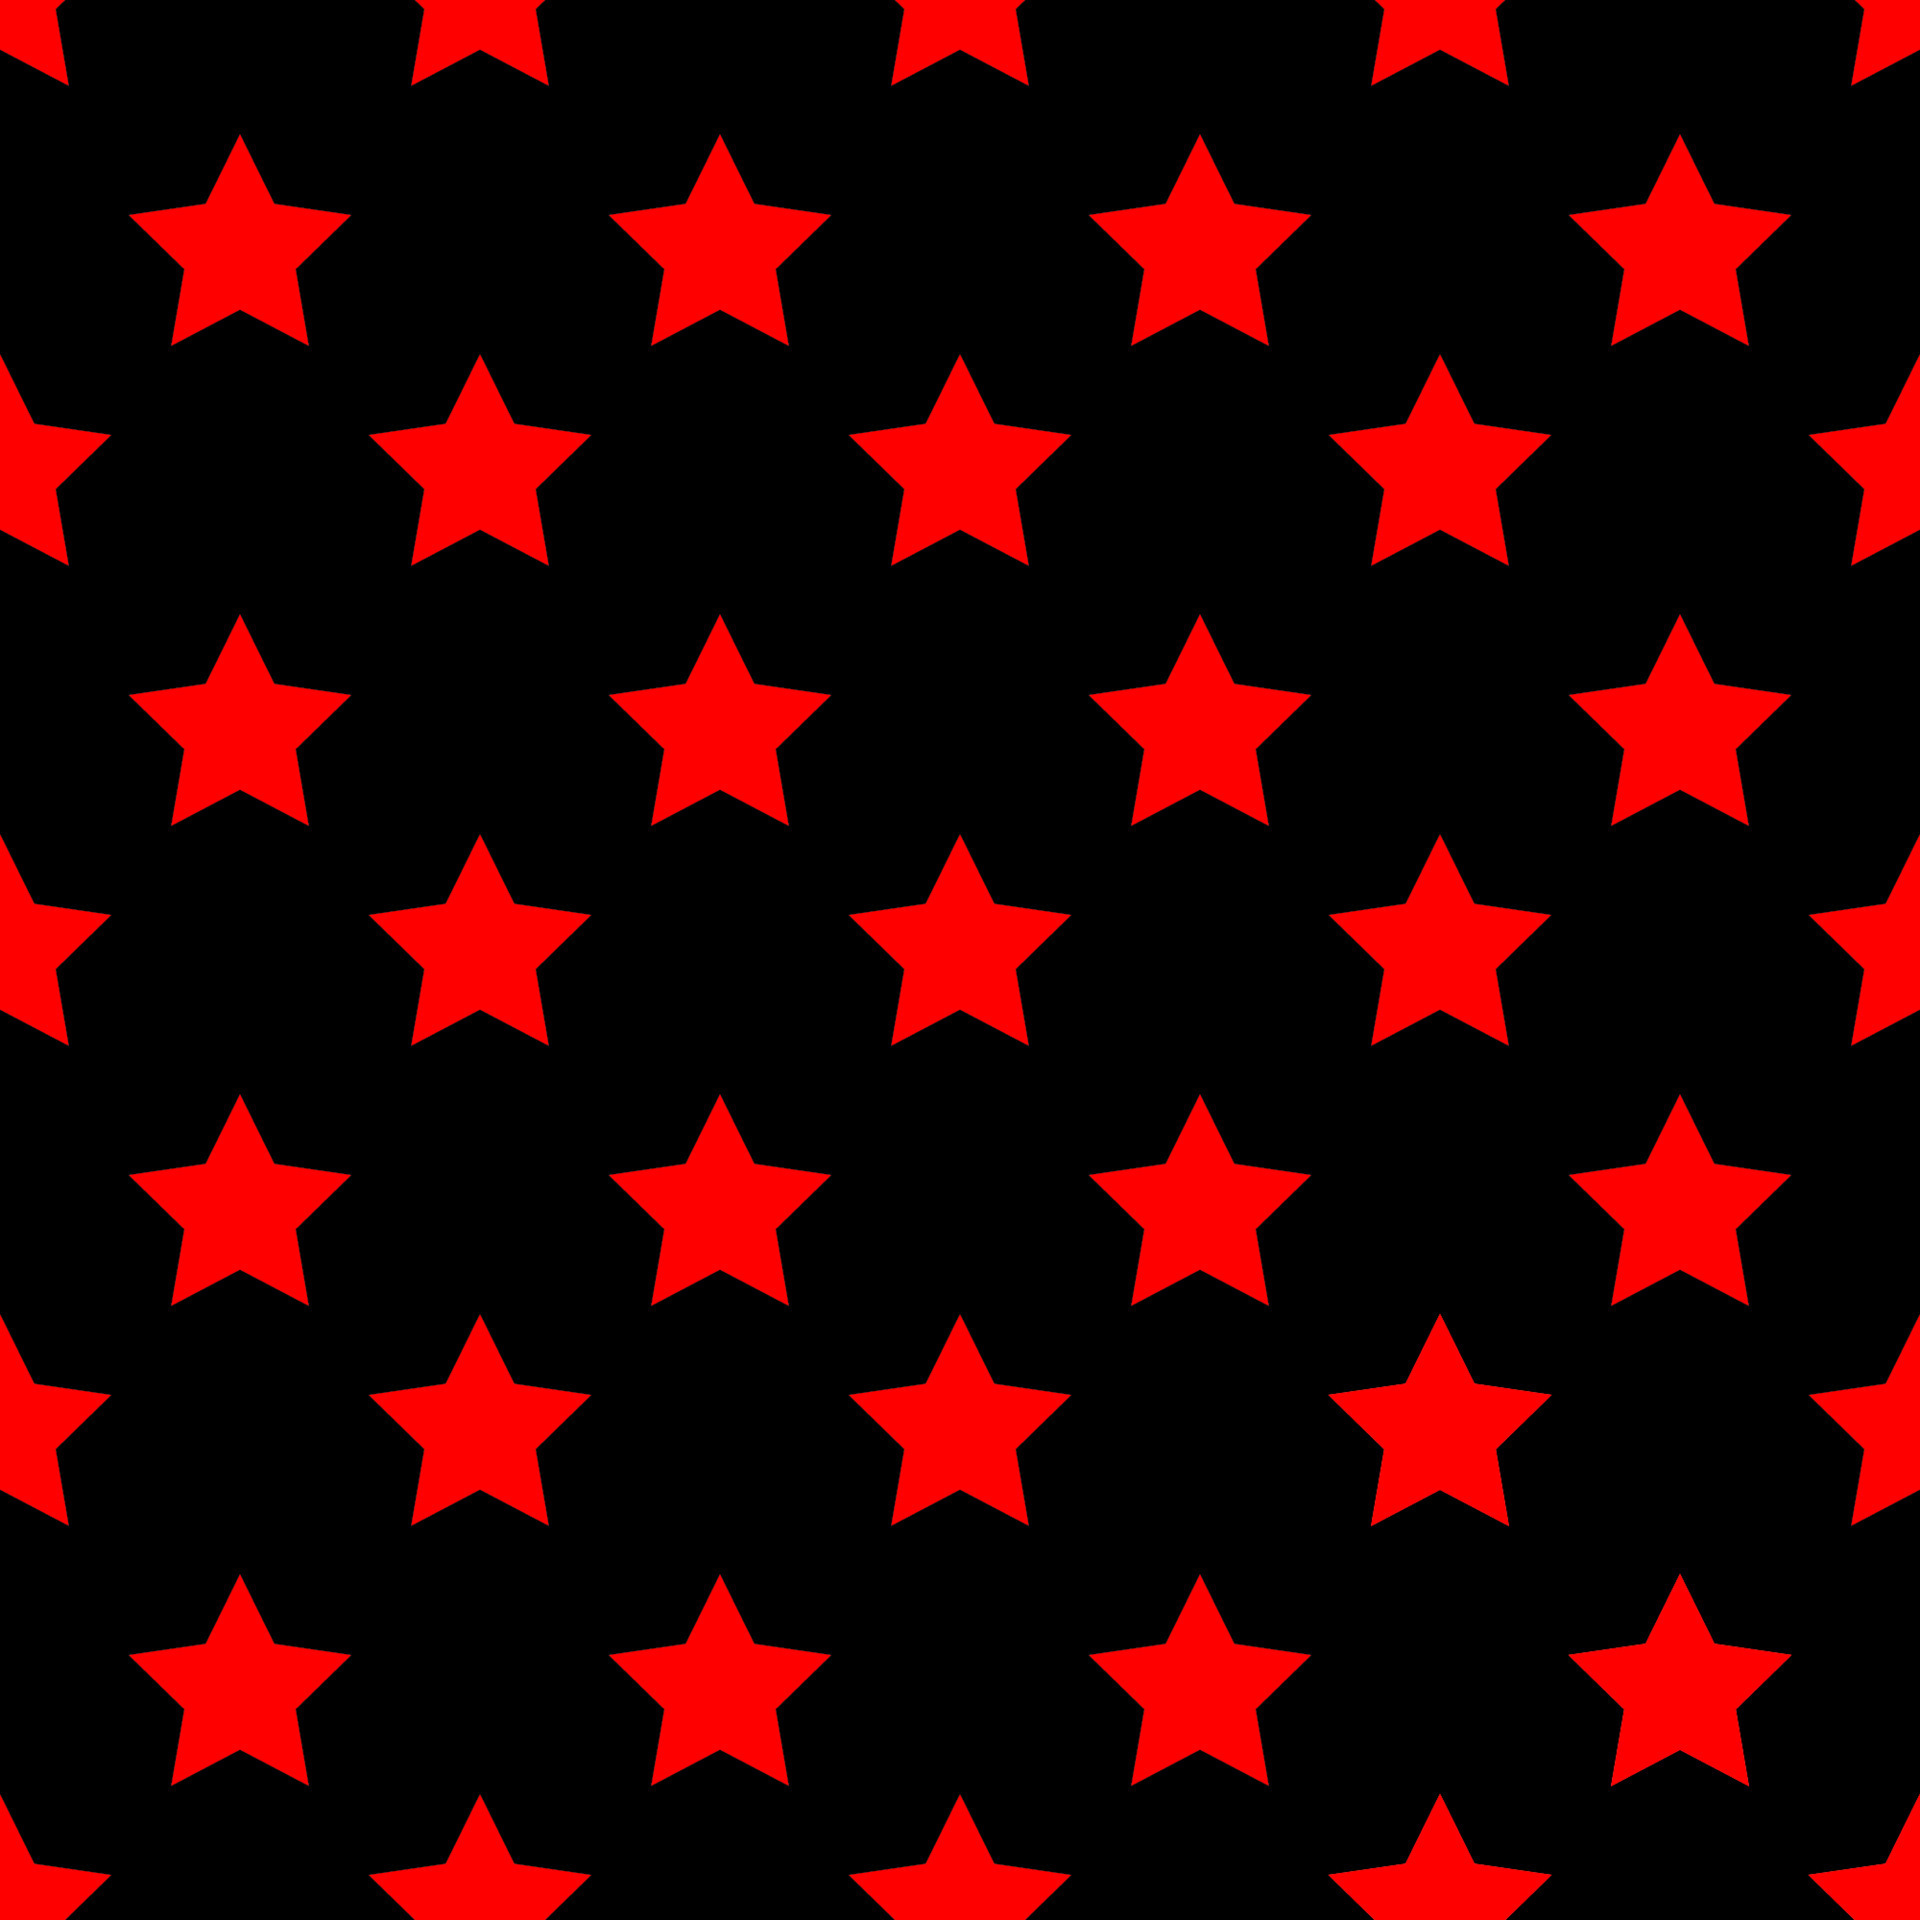 Mẫu trừu tượng sao đỏ trên nền đen được thiết kế độc đáo và sang trọng. Nếu bạn đang tìm kiếm một mẫu trừu tượng sao đỏ trên nền đen tuyệt vời cho điện thoại của mình, hãy xem qua bộ sưu tập hình ảnh của chúng tôi để có nhiều lựa chọn hơn.